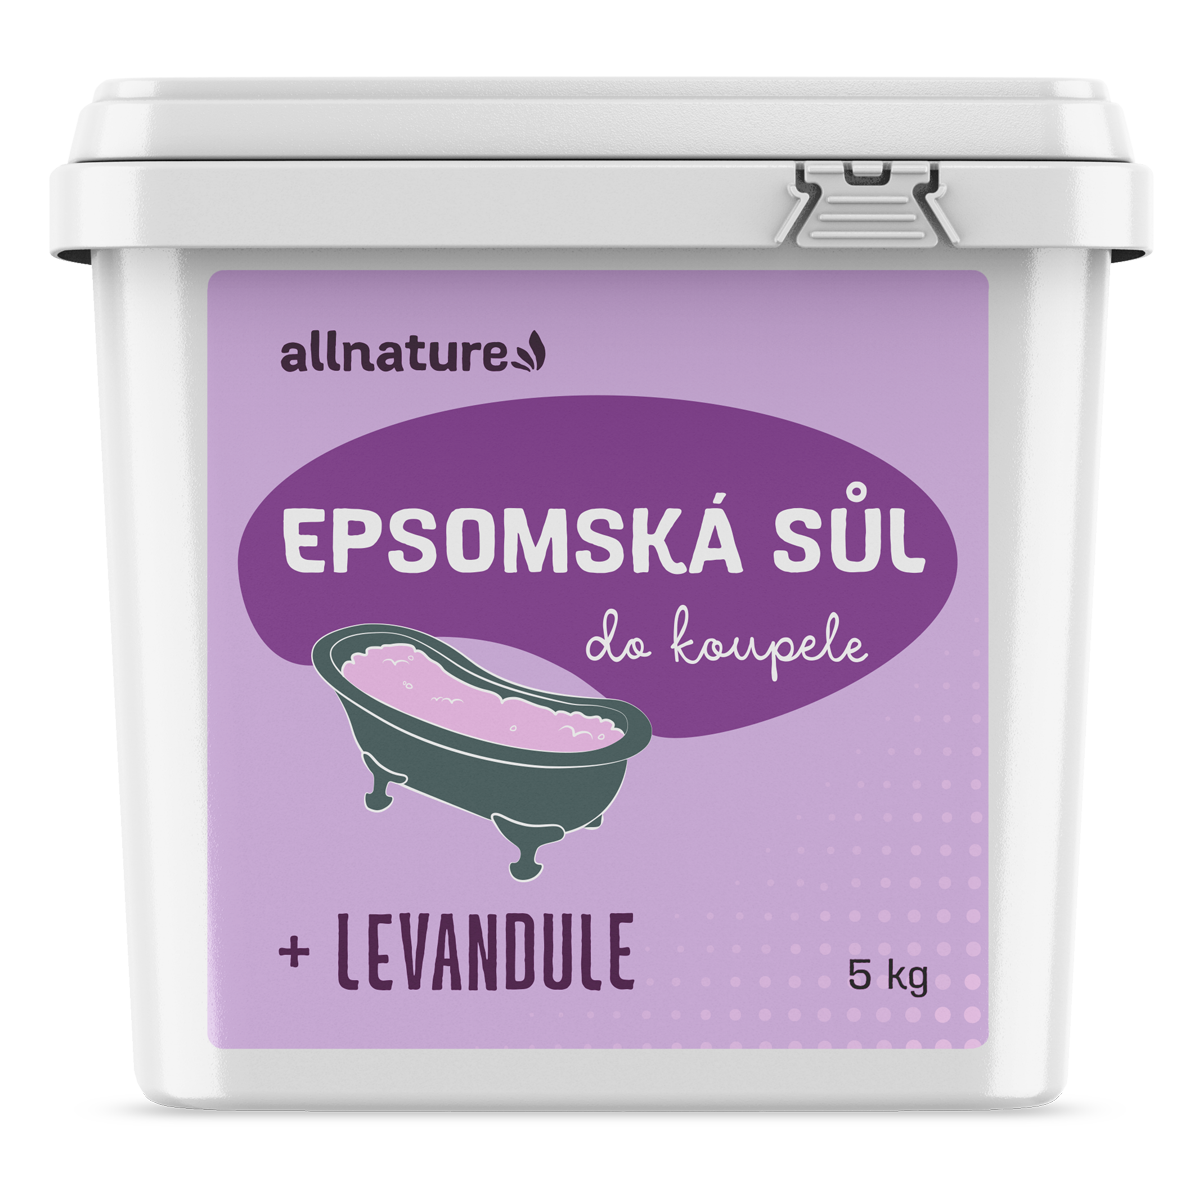 Allnature Epsomská sůl Levandule - 5 kg - II. jakost - pro uvolnění a zklidnění